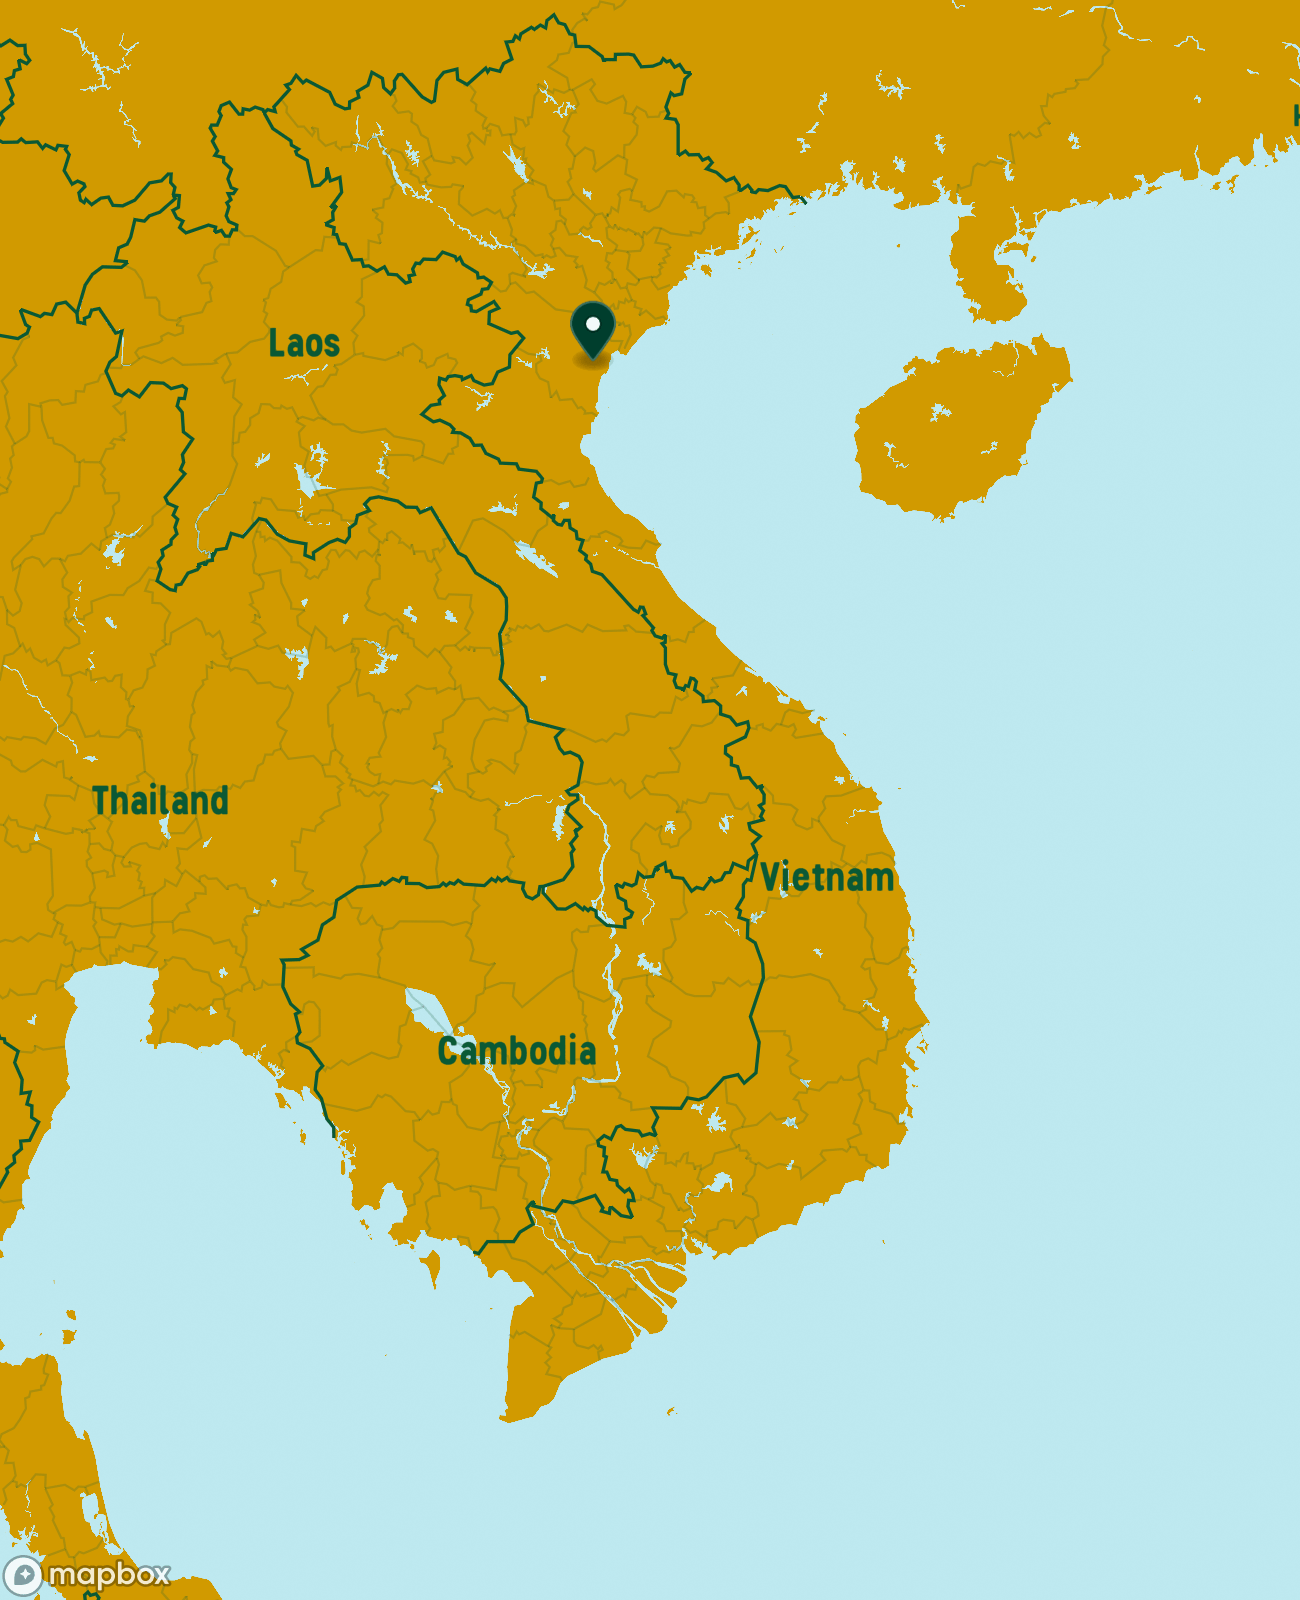 Phat Diem Stone Church Map Preview